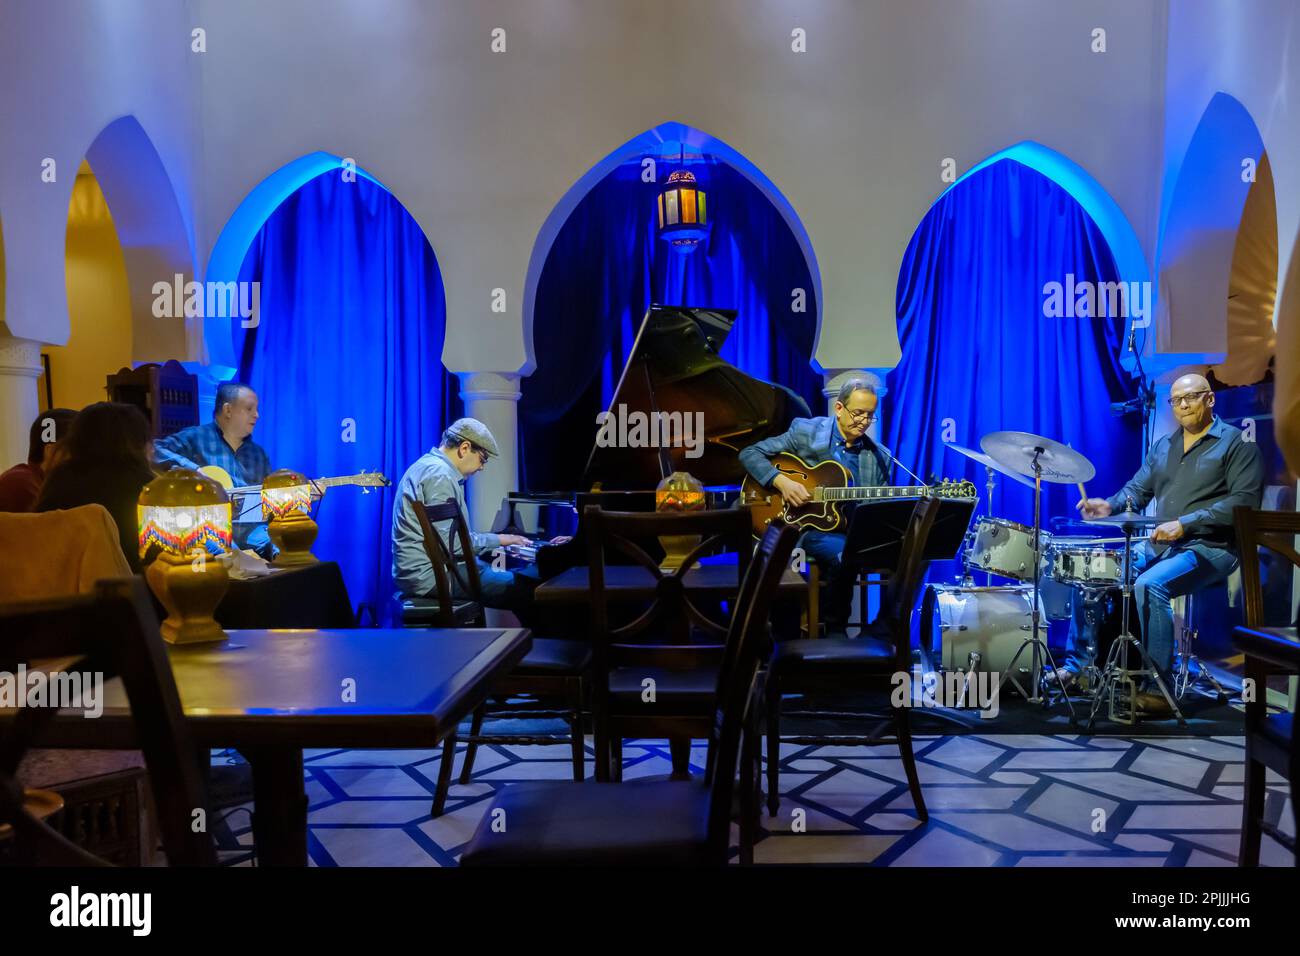 Rabat, Maroc - 2 mars 2020 : vue sur les musiciens de jazz jouant de la musique dans un restaurant magnifiquement décoré à Casablanca Maroc Banque D'Images